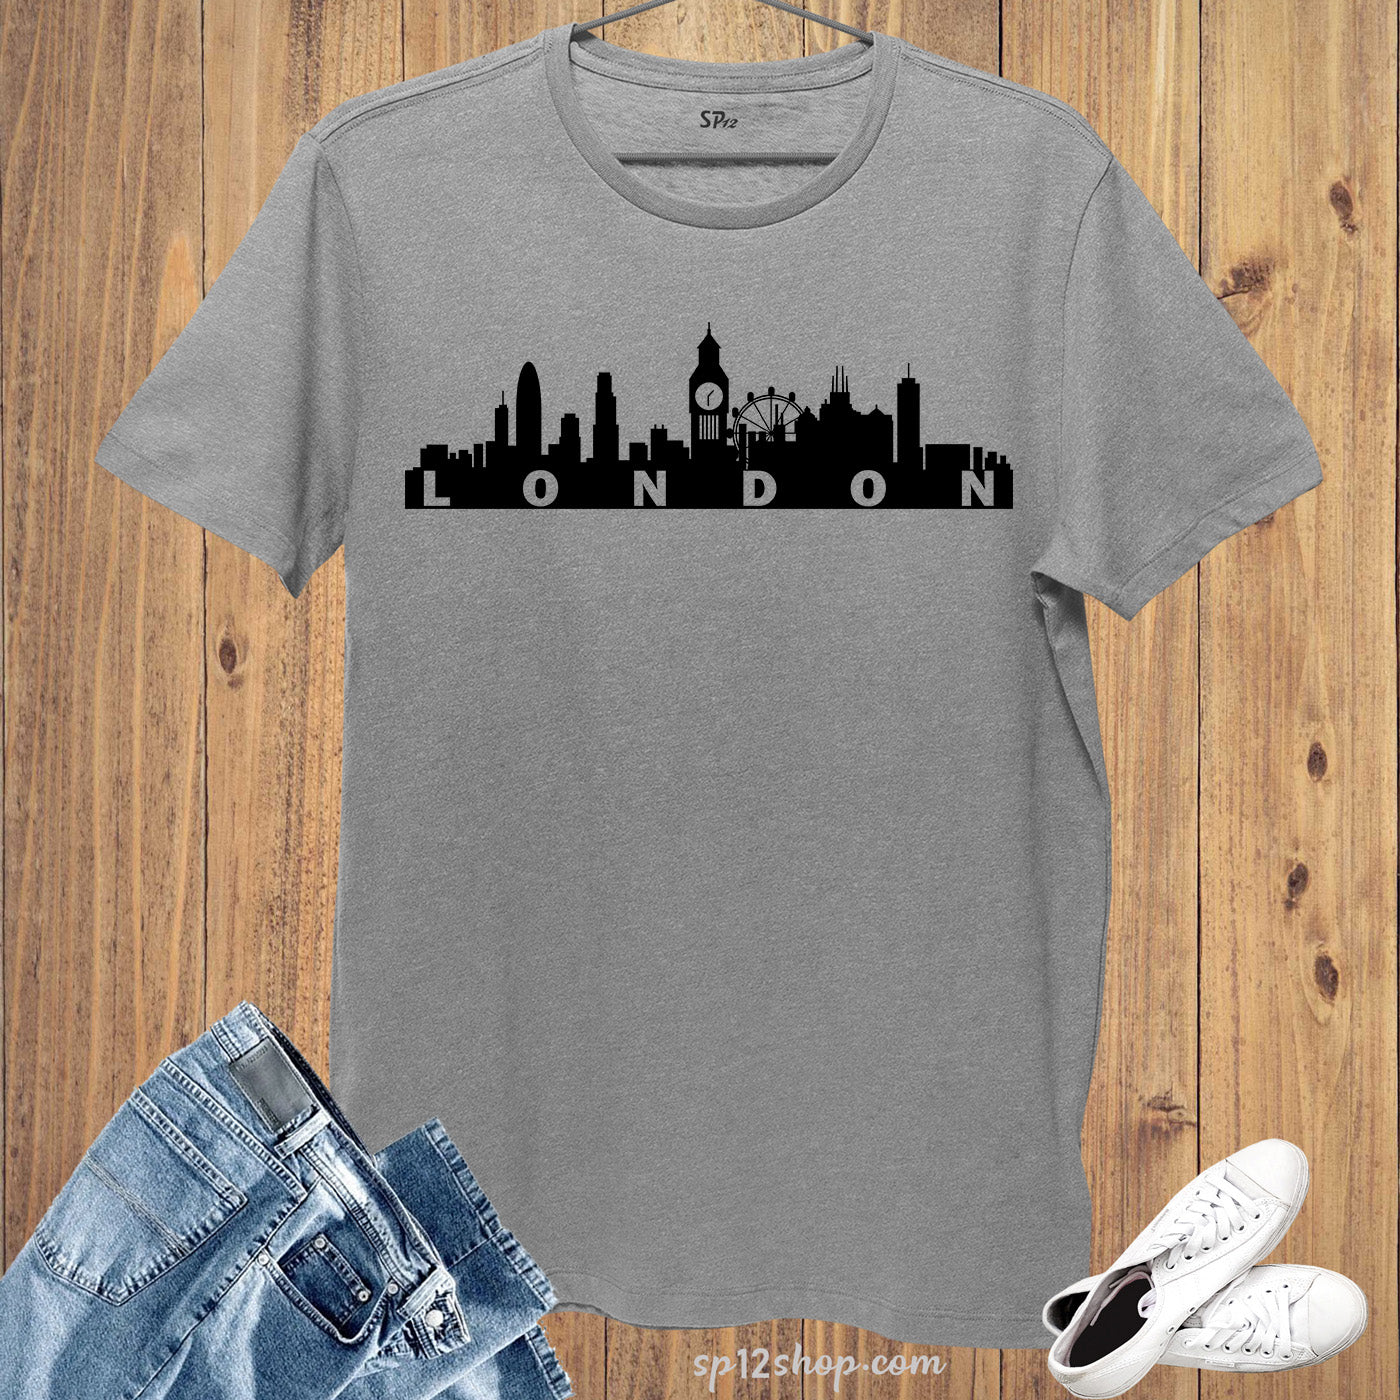 London Skyline T Shirt